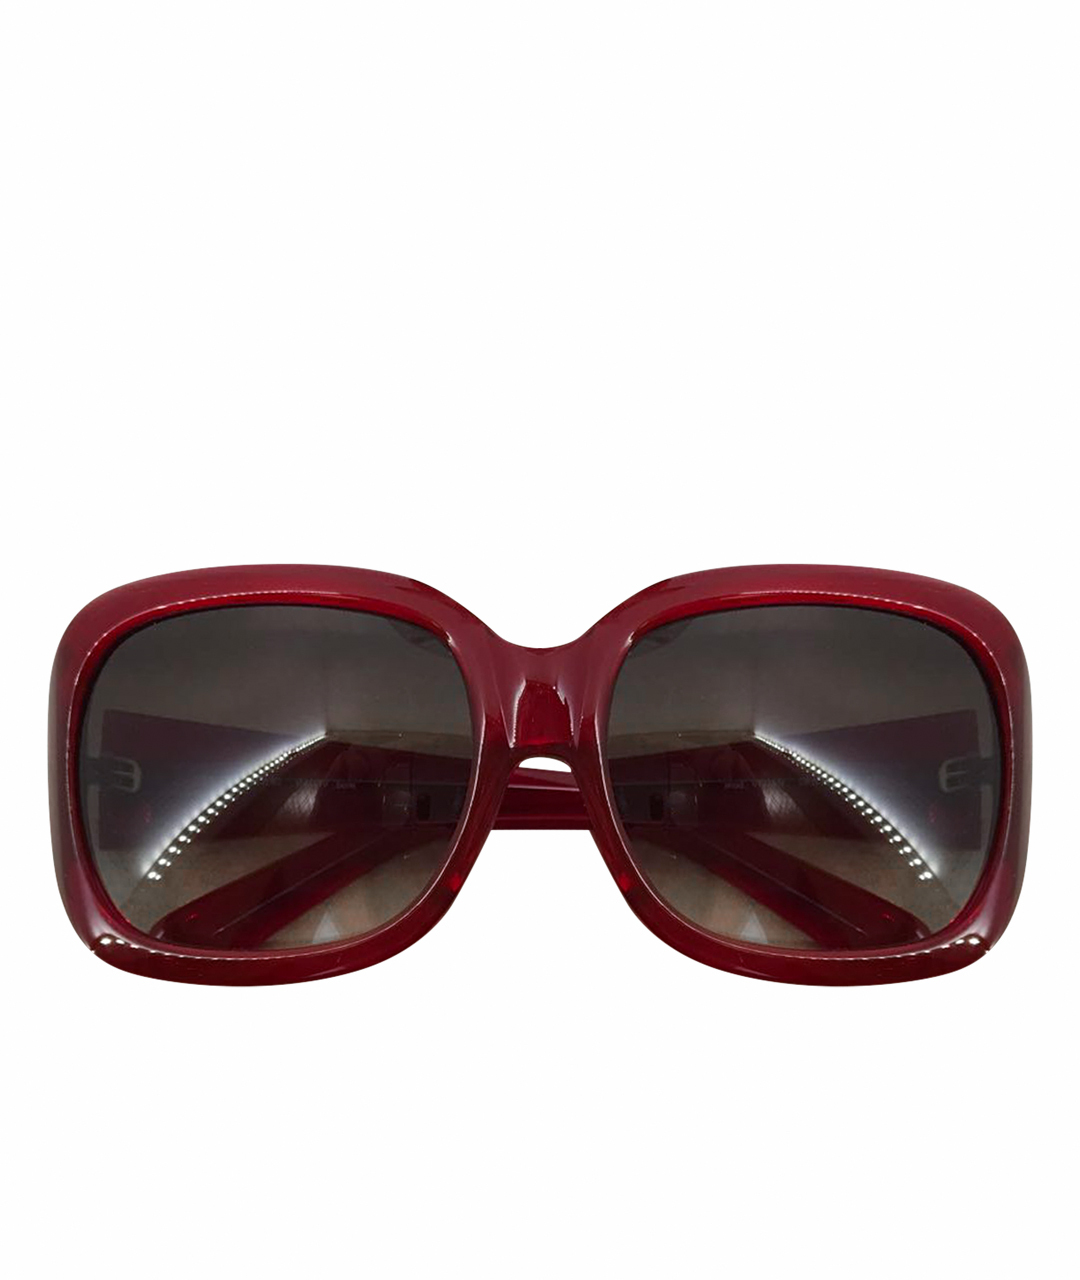 3.1 PHILLIP LIM Бордовые пластиковые солнцезащитные очки, фото 1